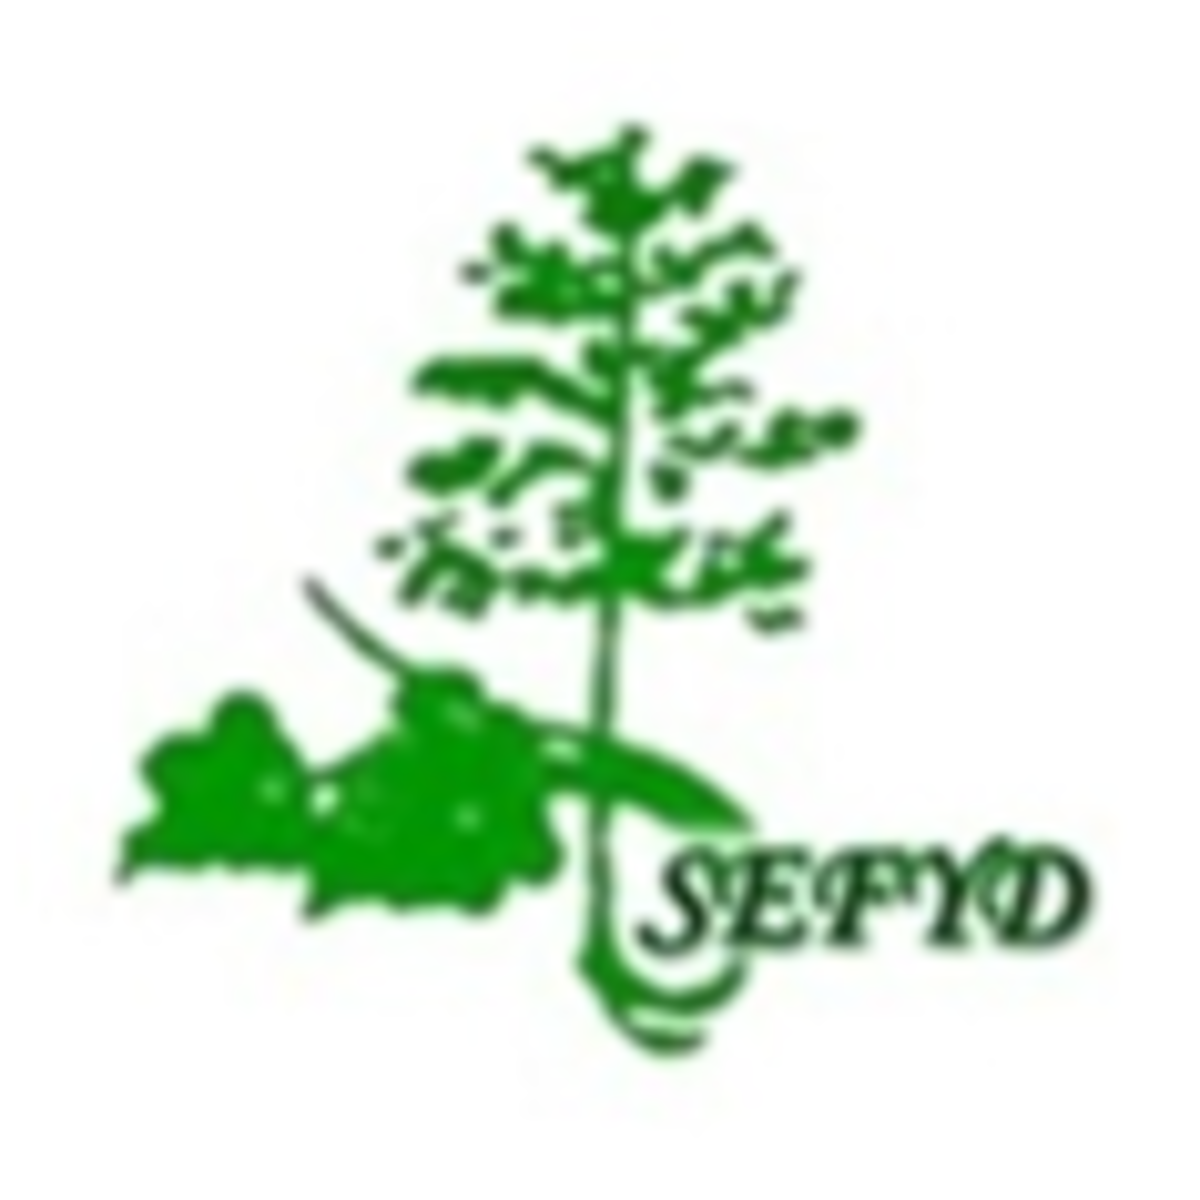 SEFYD logo